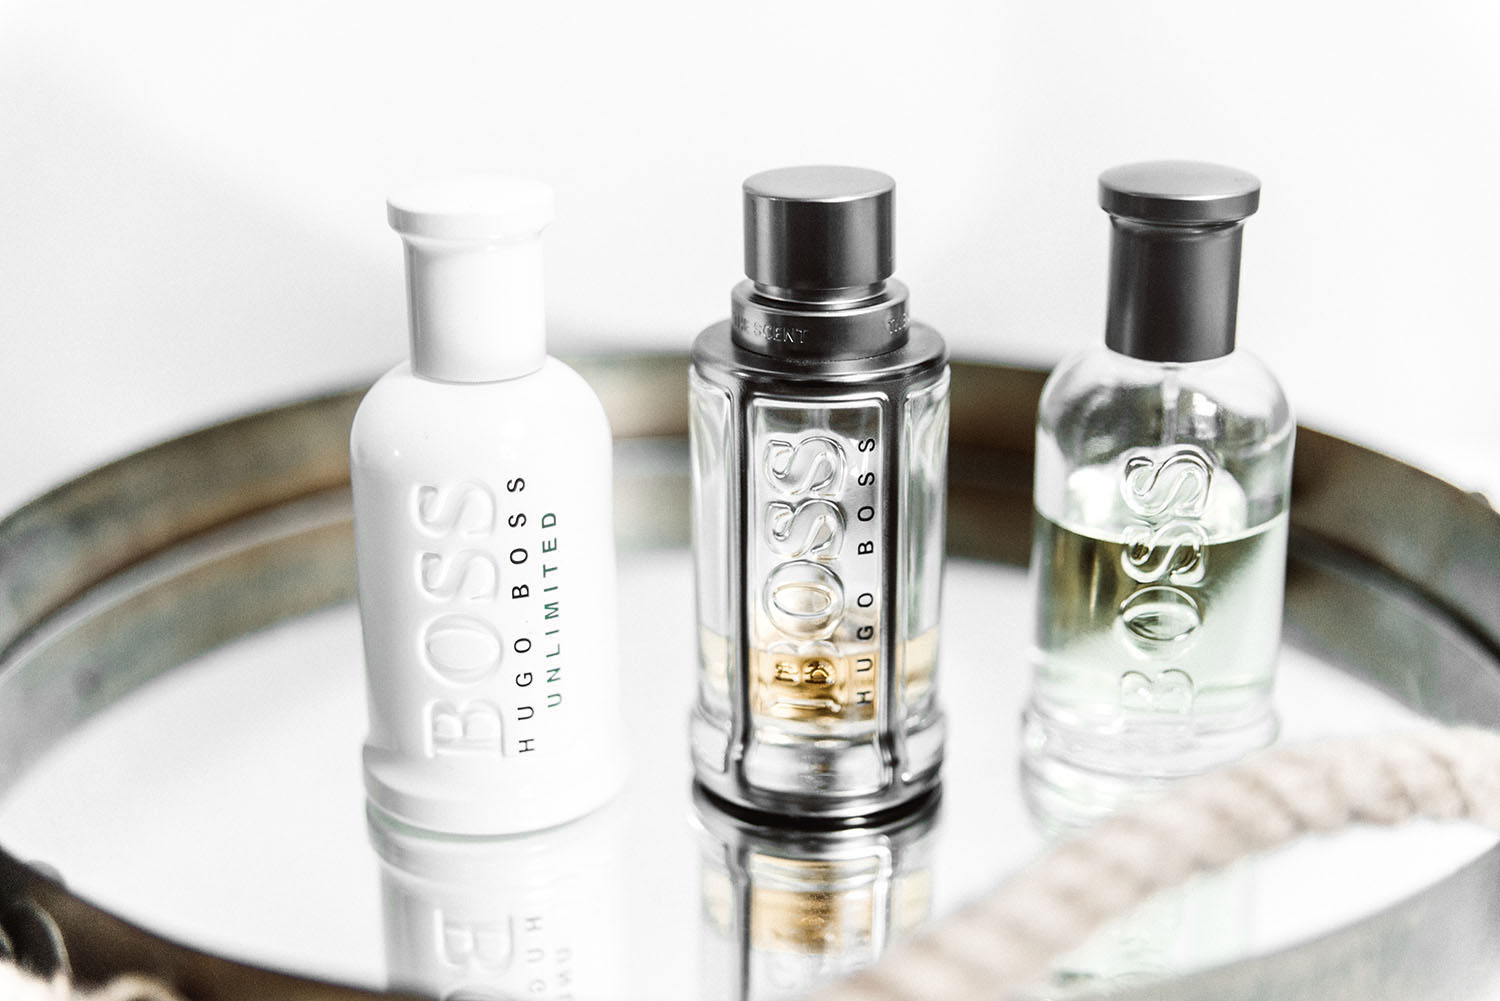 3 Perfumes for men: Hugo Boss Unlimited, Hugo Boss The Scent & Boss Bottled